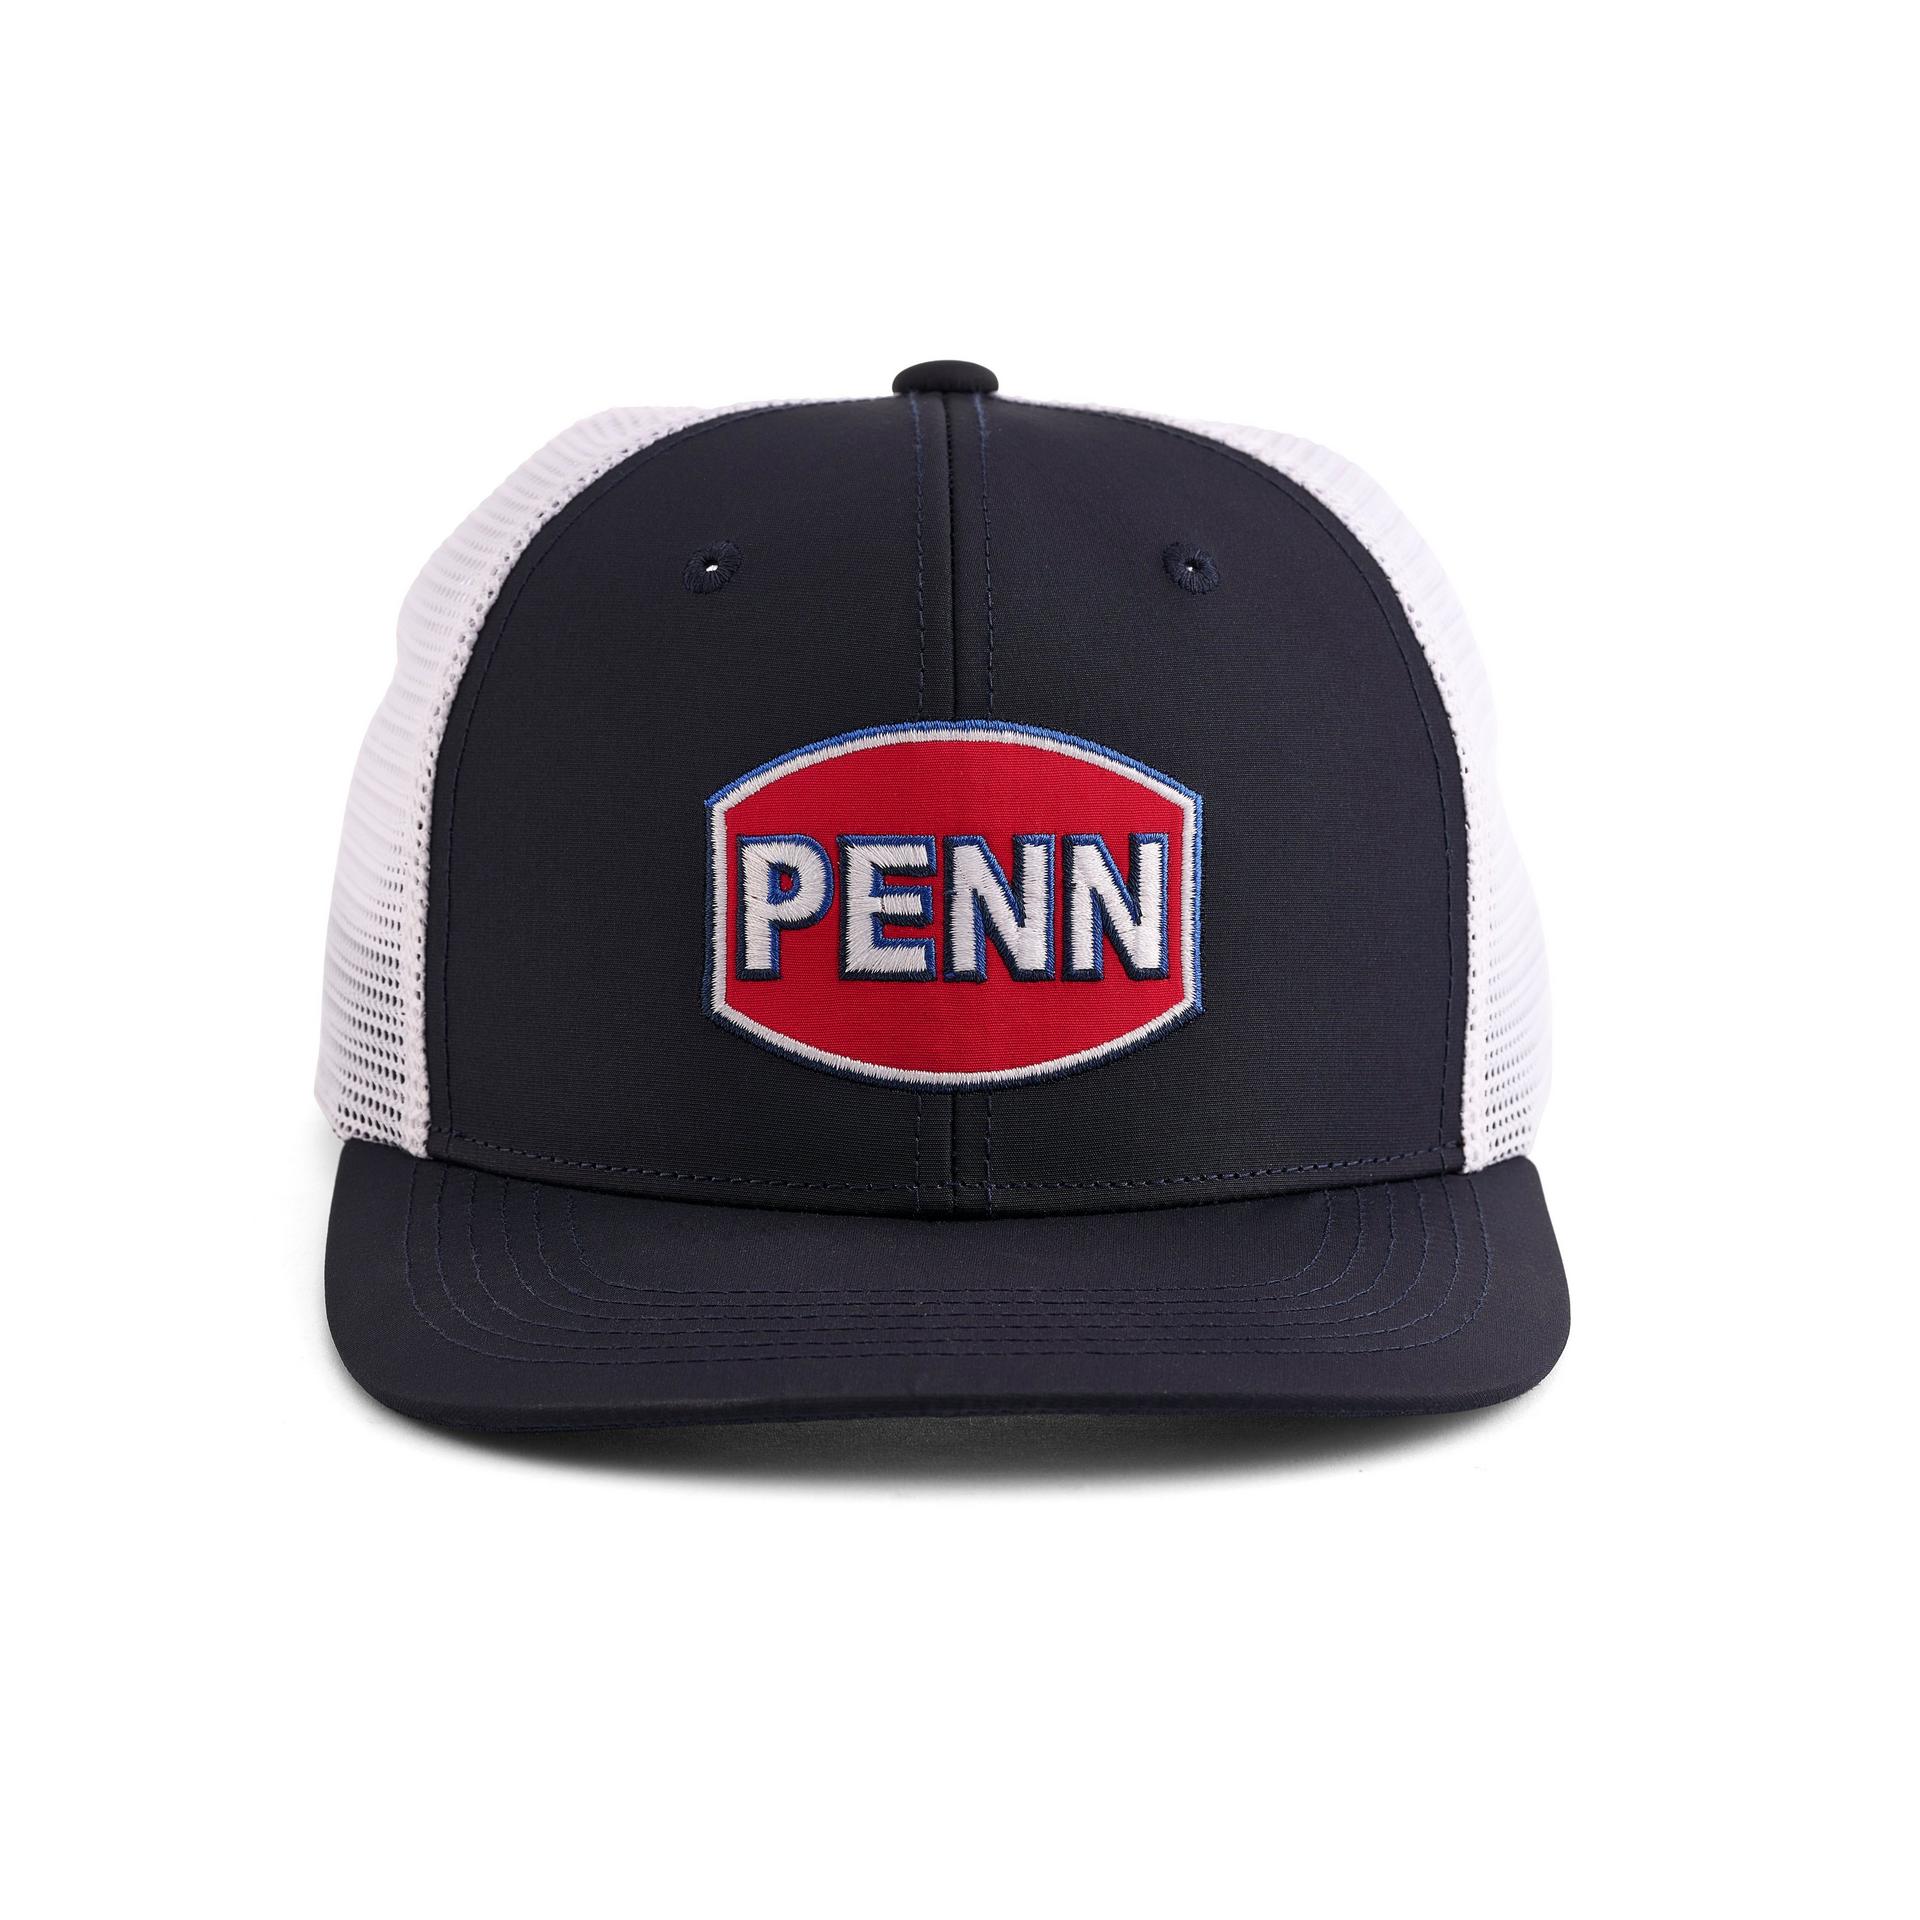 PENN PENN® Performance Trucker Hat